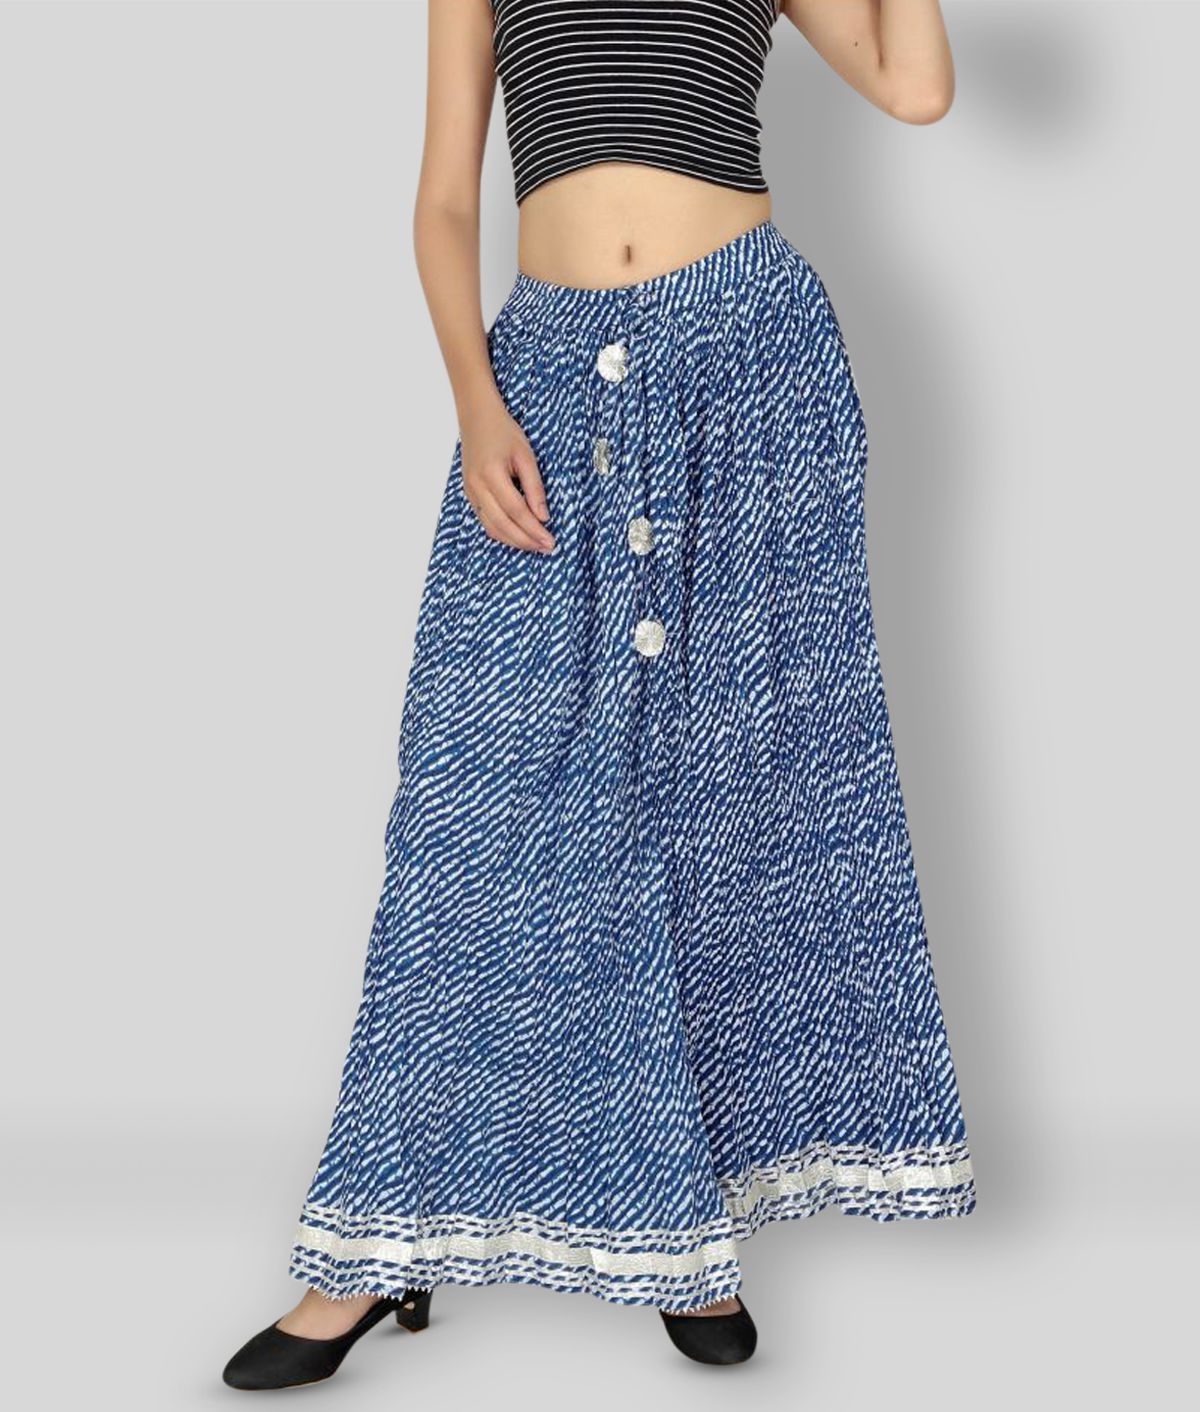     			FABRR - Blue Cotton Women's A-Line Skirt ( Pack of 1 )